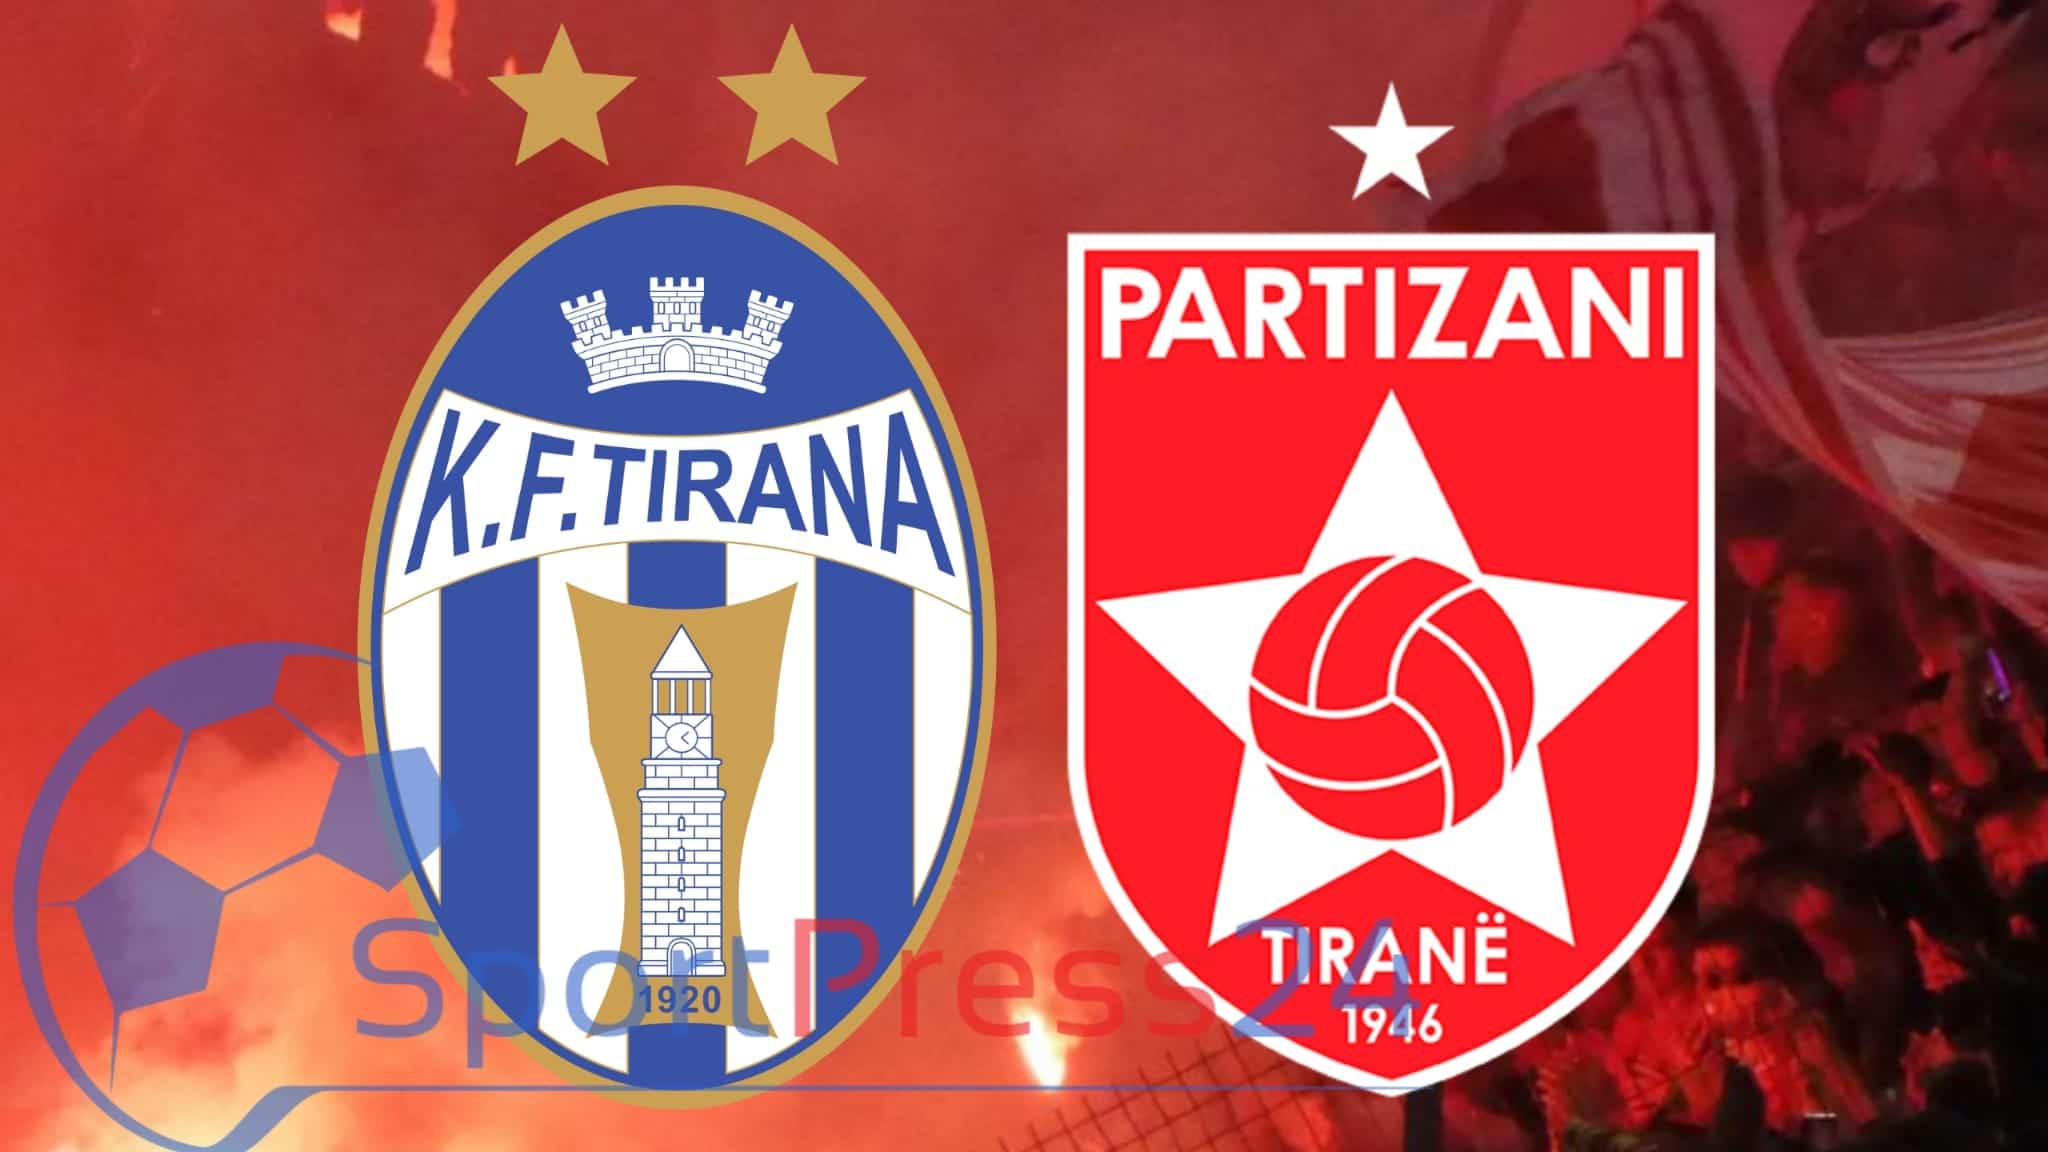 𝐀𝐛𝐢𝐬𝐬𝐧𝐞𝐭 𝐒𝐮𝐩𝐞𝐫𝐢𝐨𝐫𝐞 -𝐉𝐚𝐯𝐚 𝟏𝟎- KF Tirana